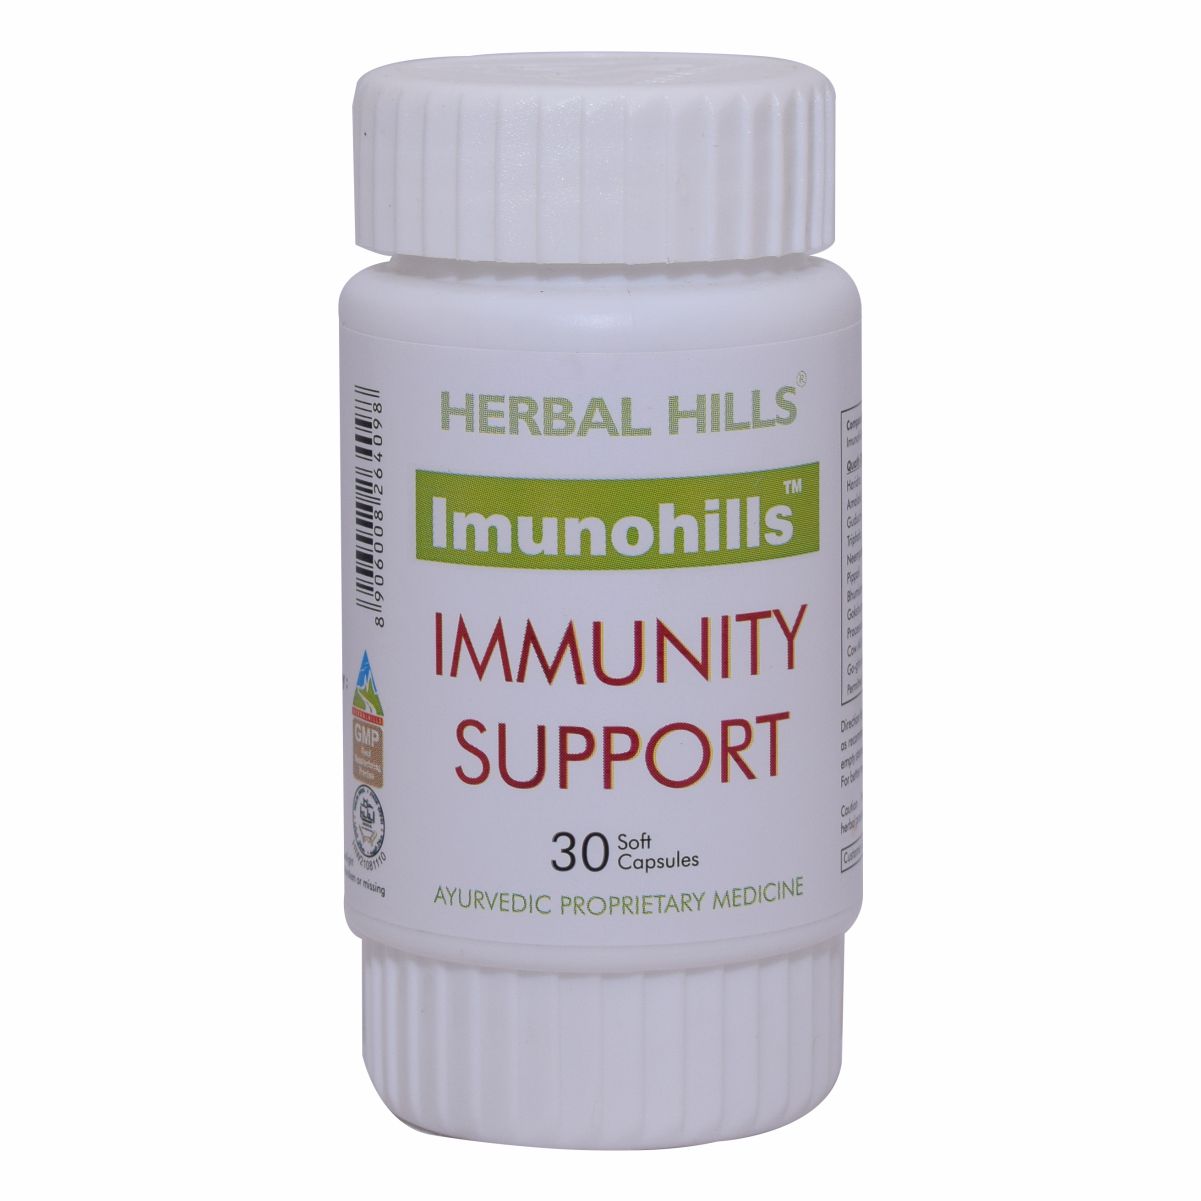 Herbal Hills Imunohills